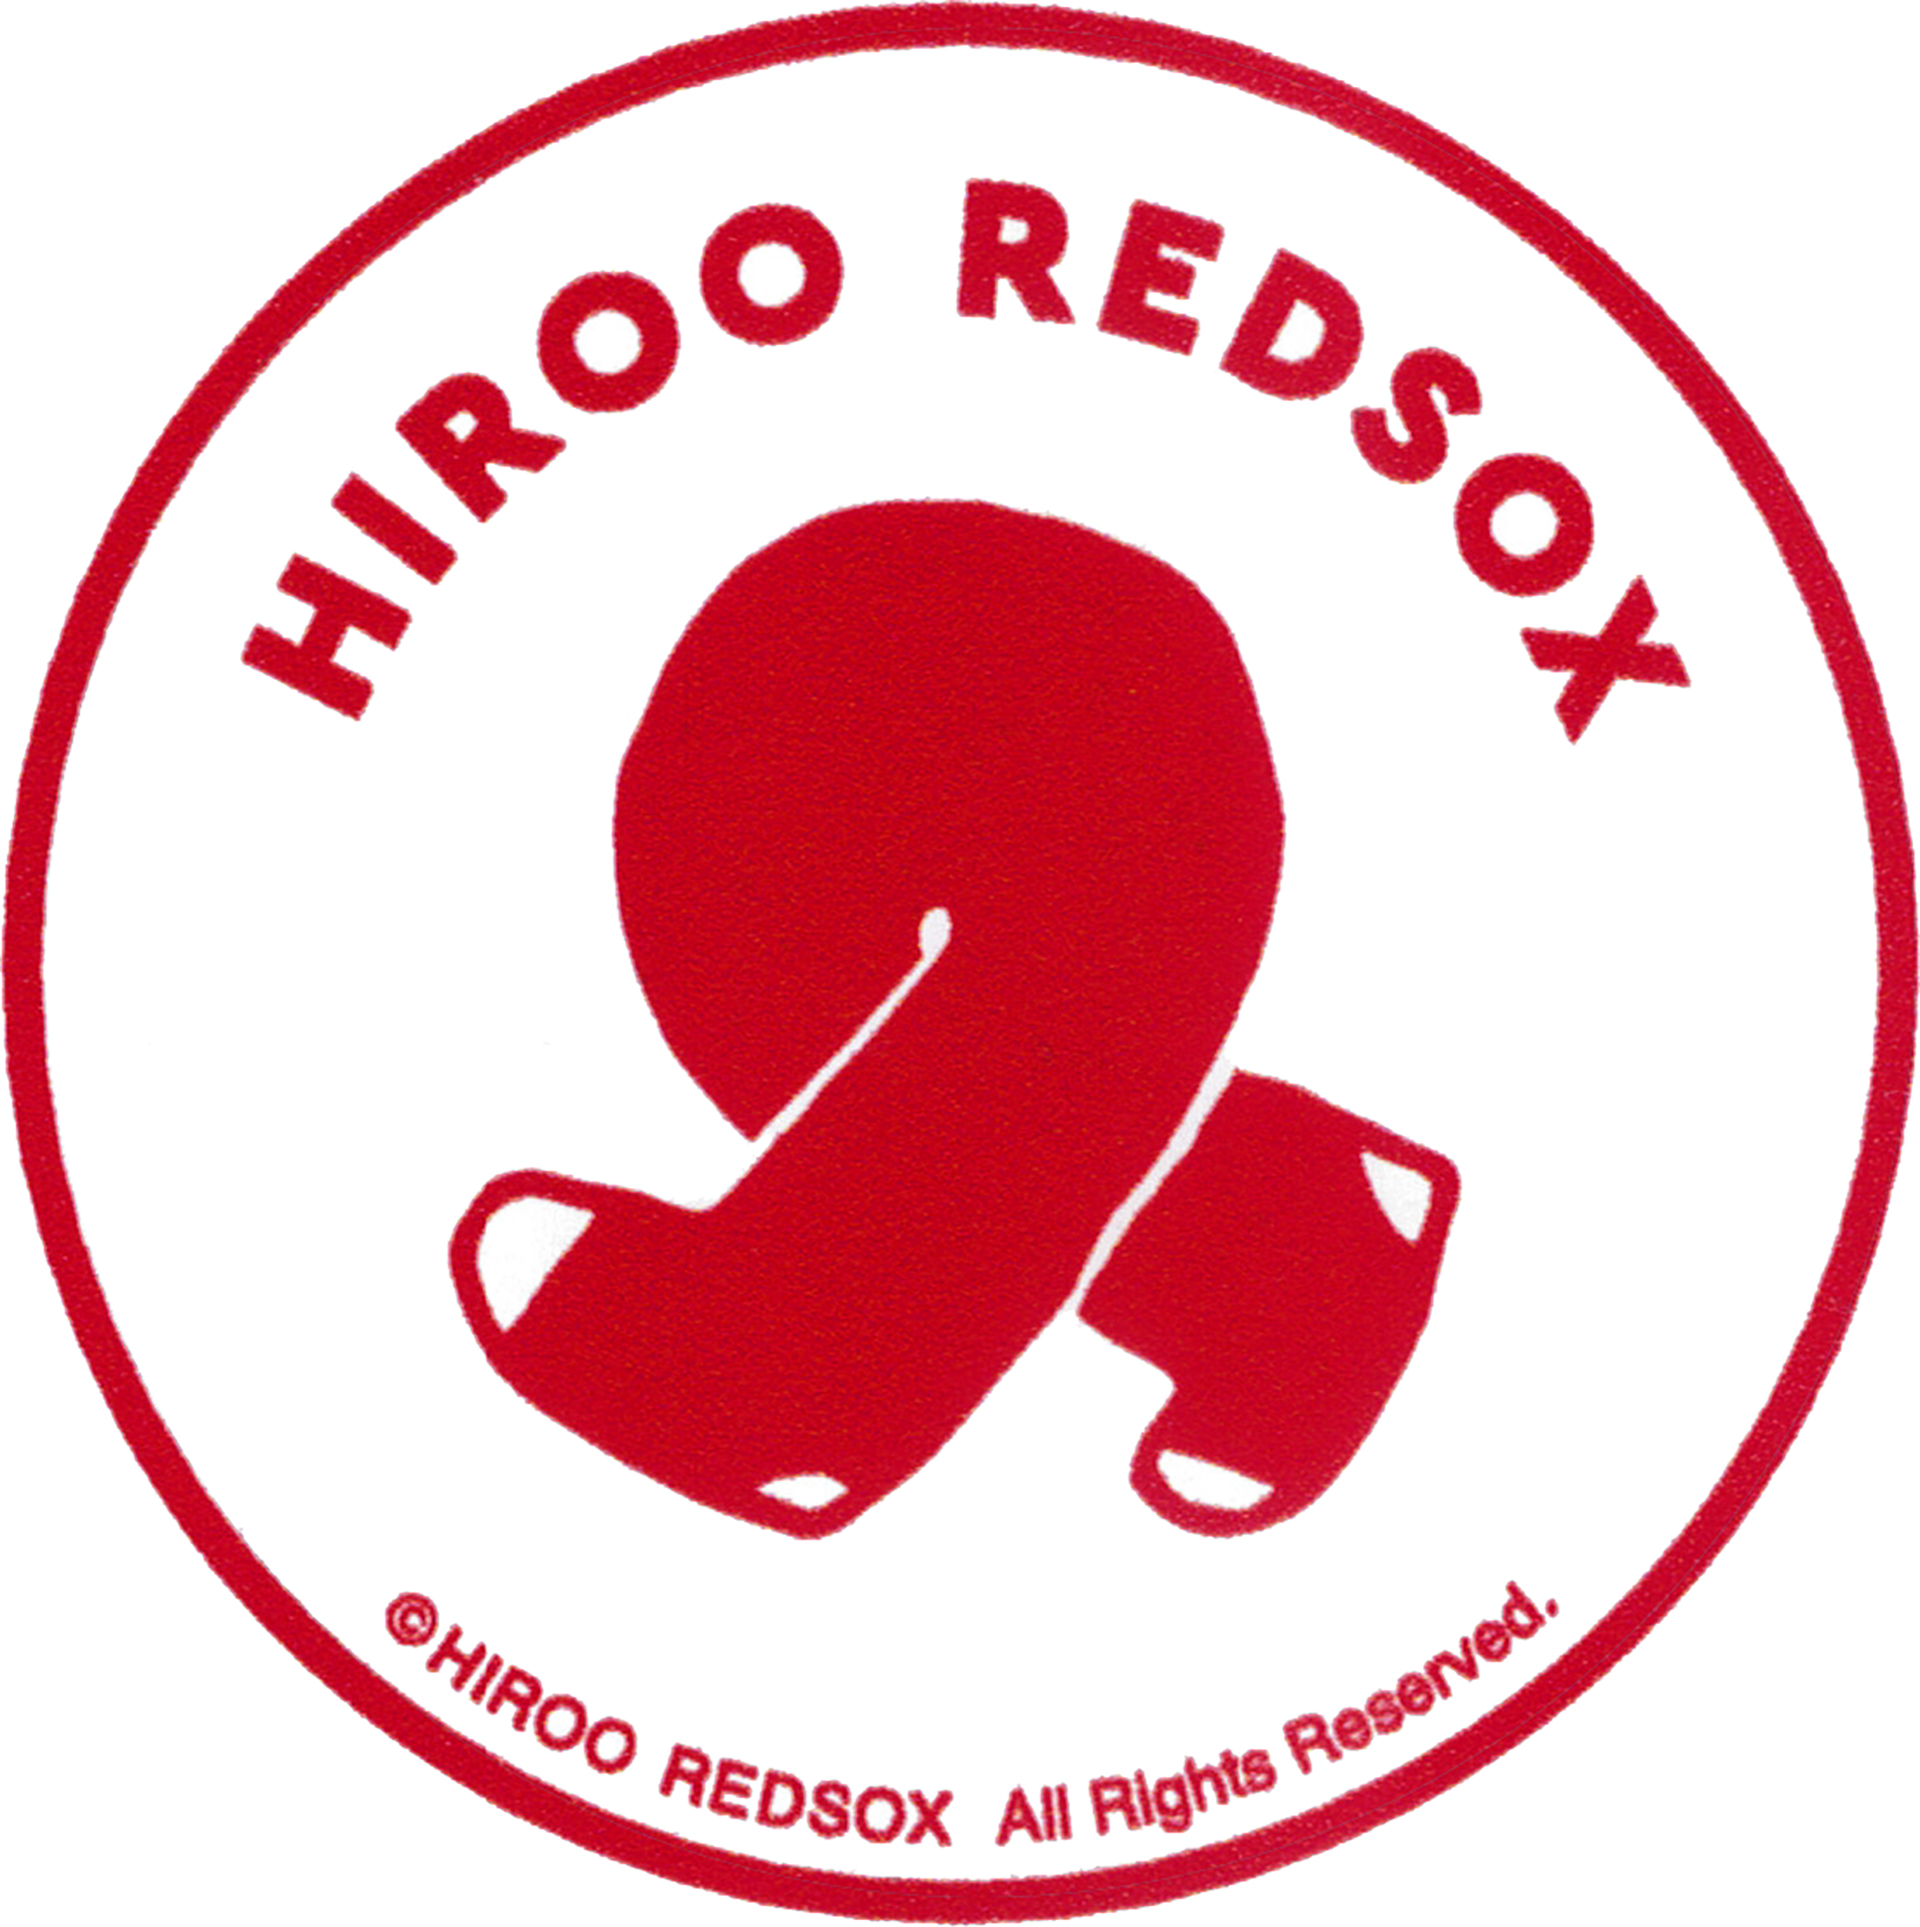 HIROO REDSOX